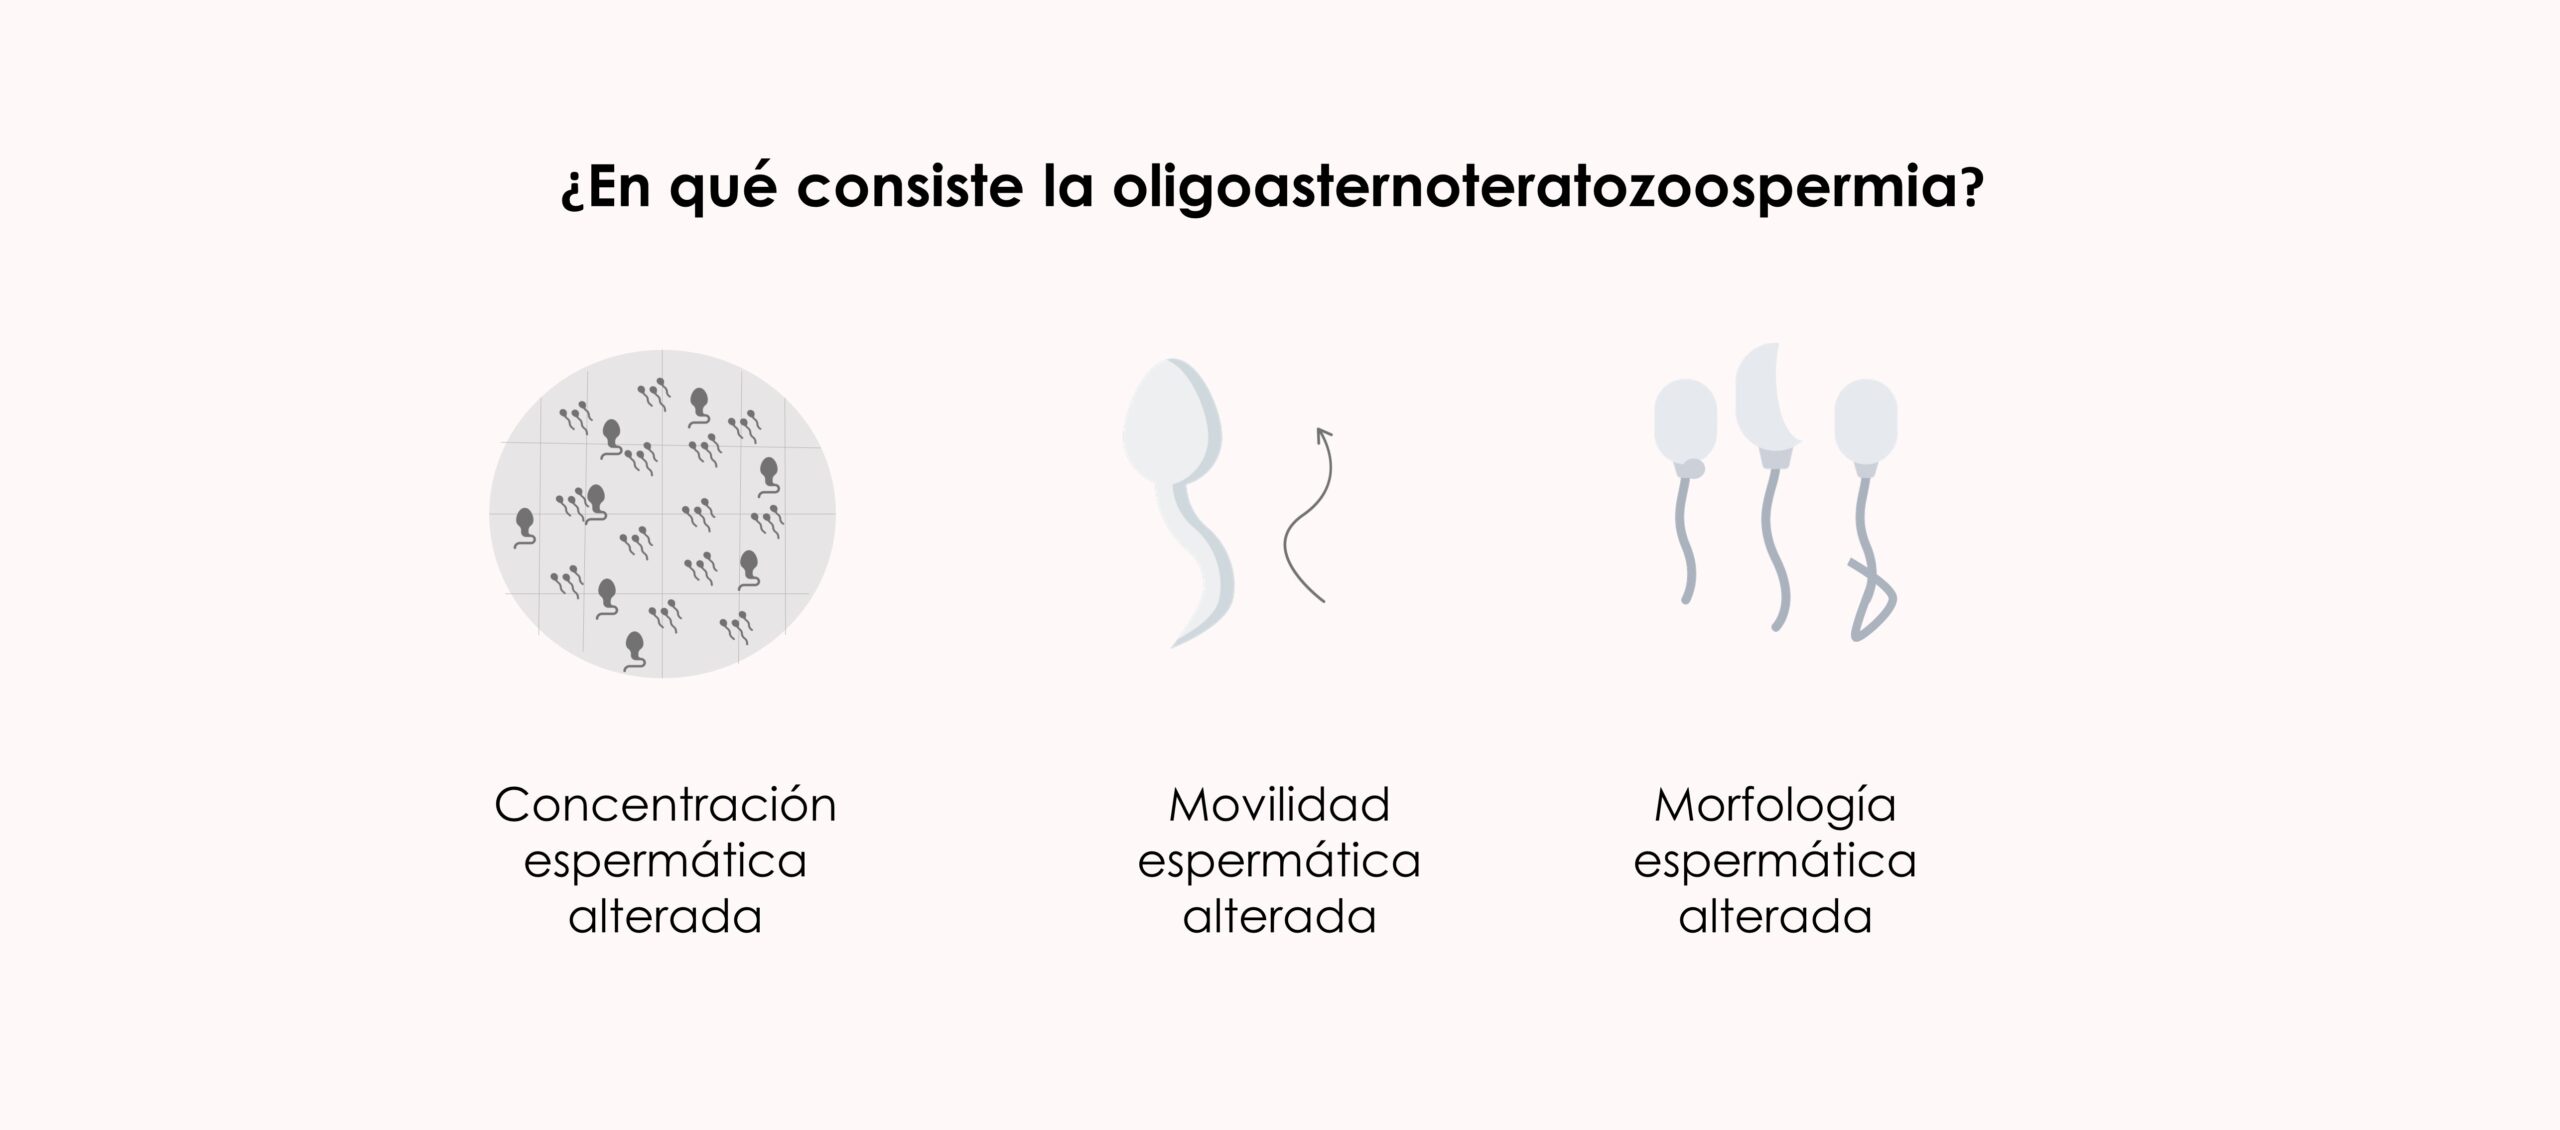 ¿En qué consiste la oligoastenoteratozoospermia?